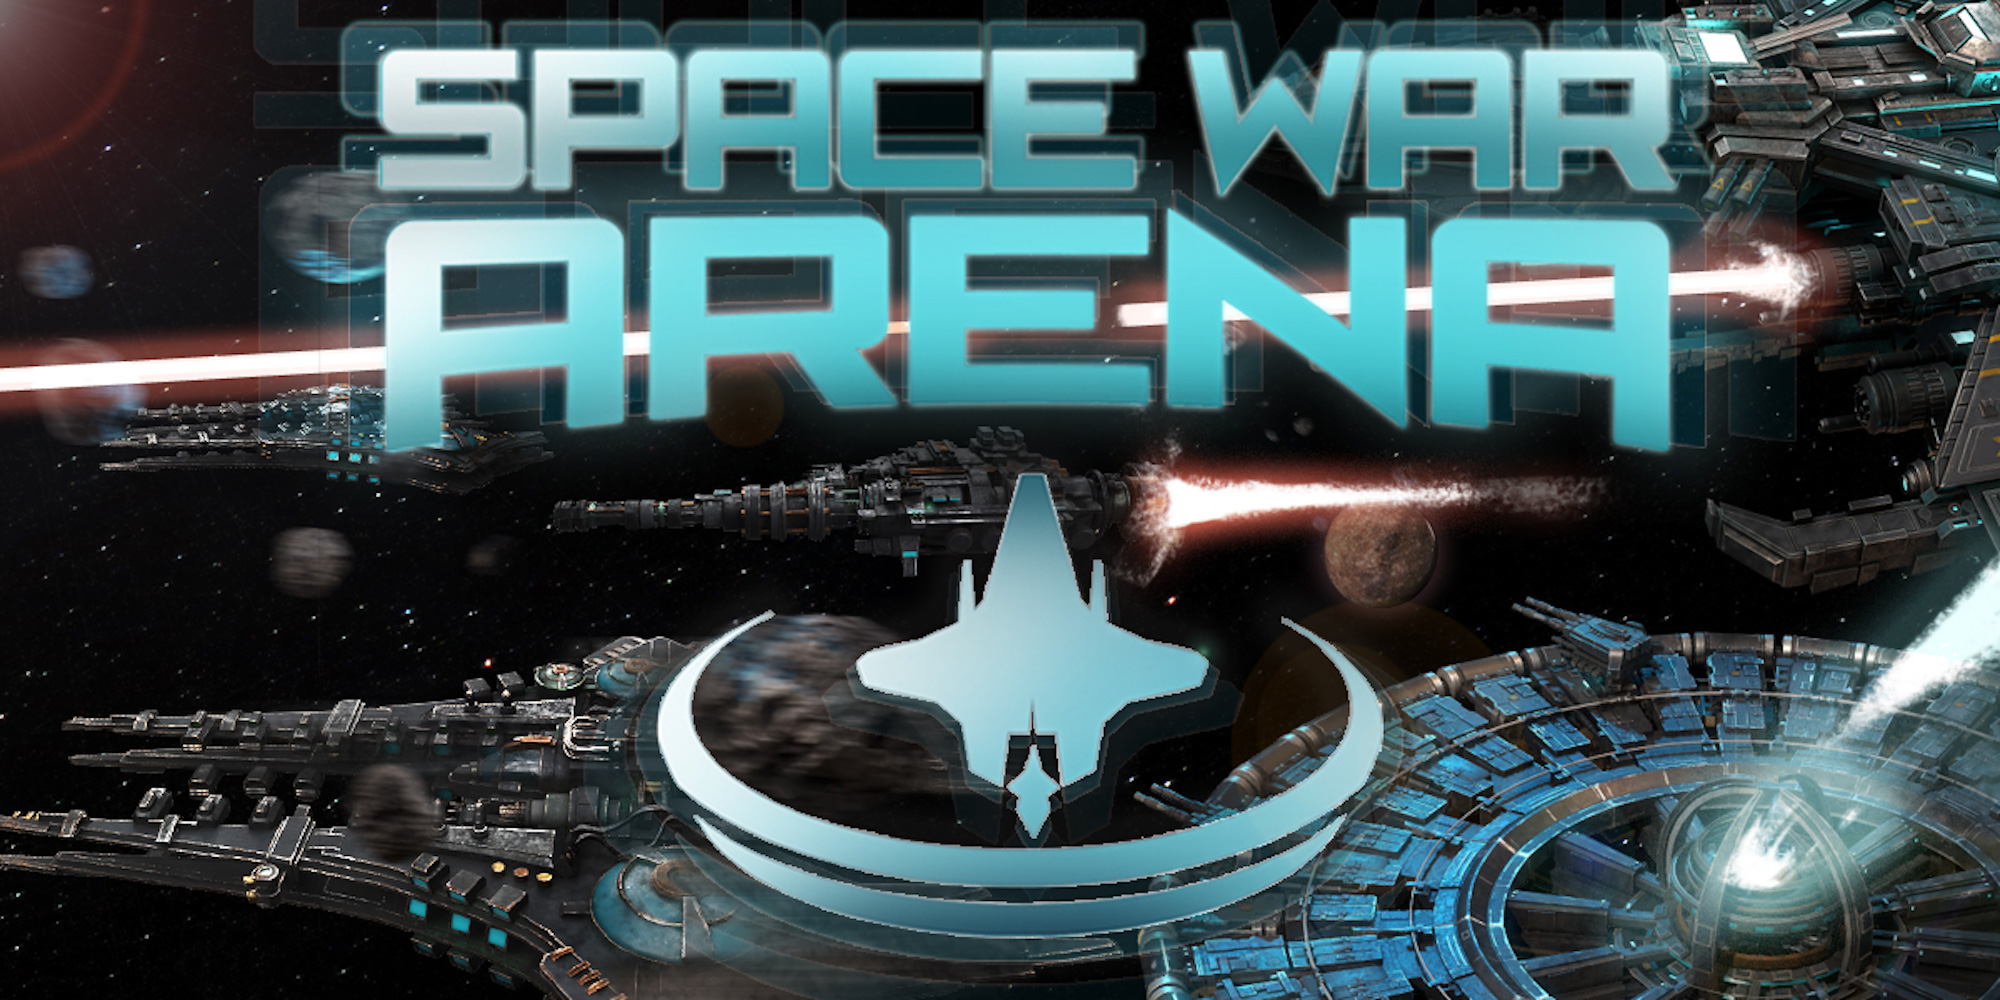 Игра space arena